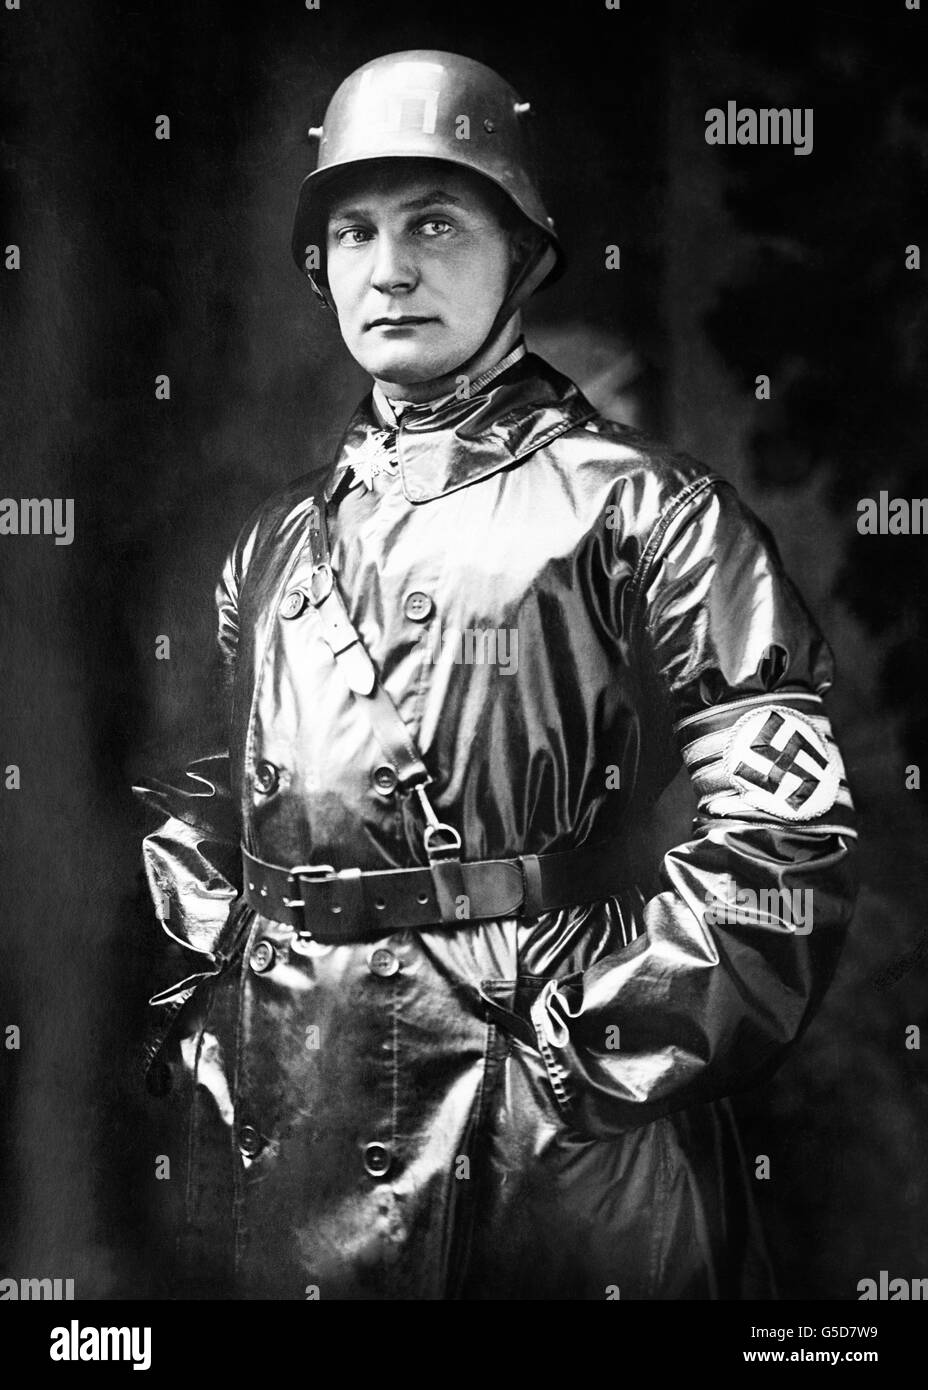 Ein Foto von Kapitän Hermann Göring aus dem Jahr 1923 als Oberbefehlshaber der SA. Goering trägt einen Stahlhelm der Ehrhardt Brigade, ein Hakenkreuz-Armband und den Blue Max, den er als Pilot während des Ersten Weltkriegs verdient hat. Stockfoto